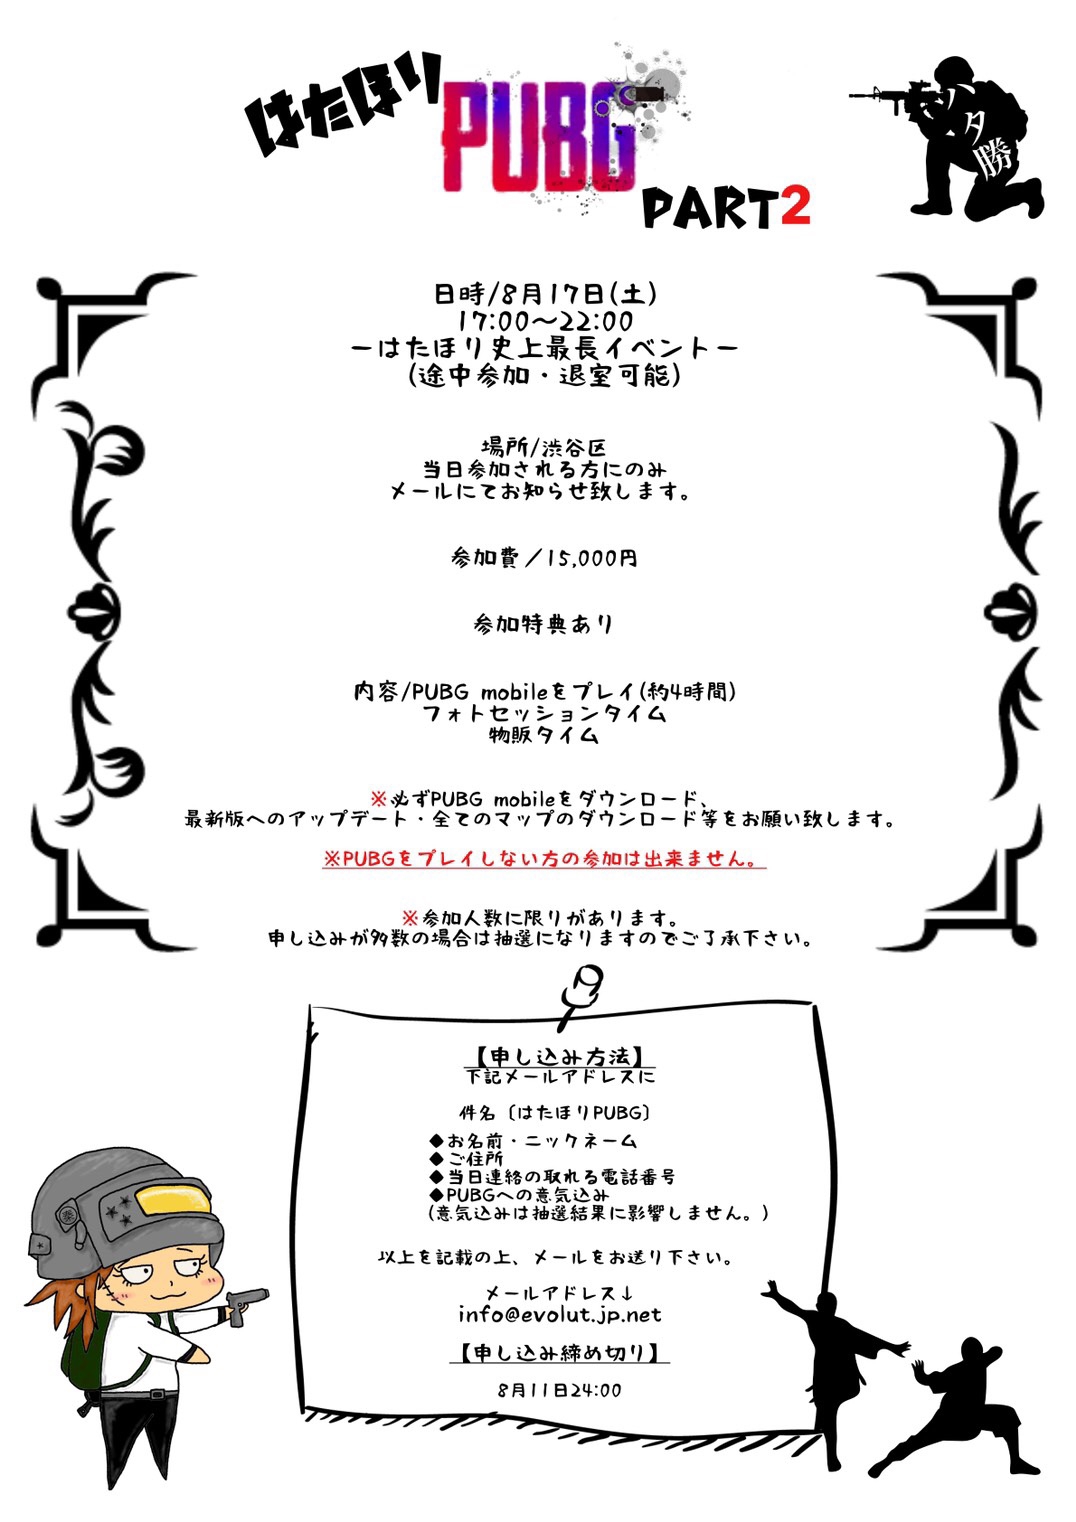 はたほりvol 15 Pubg Part2 Hata Mizuho Official Site